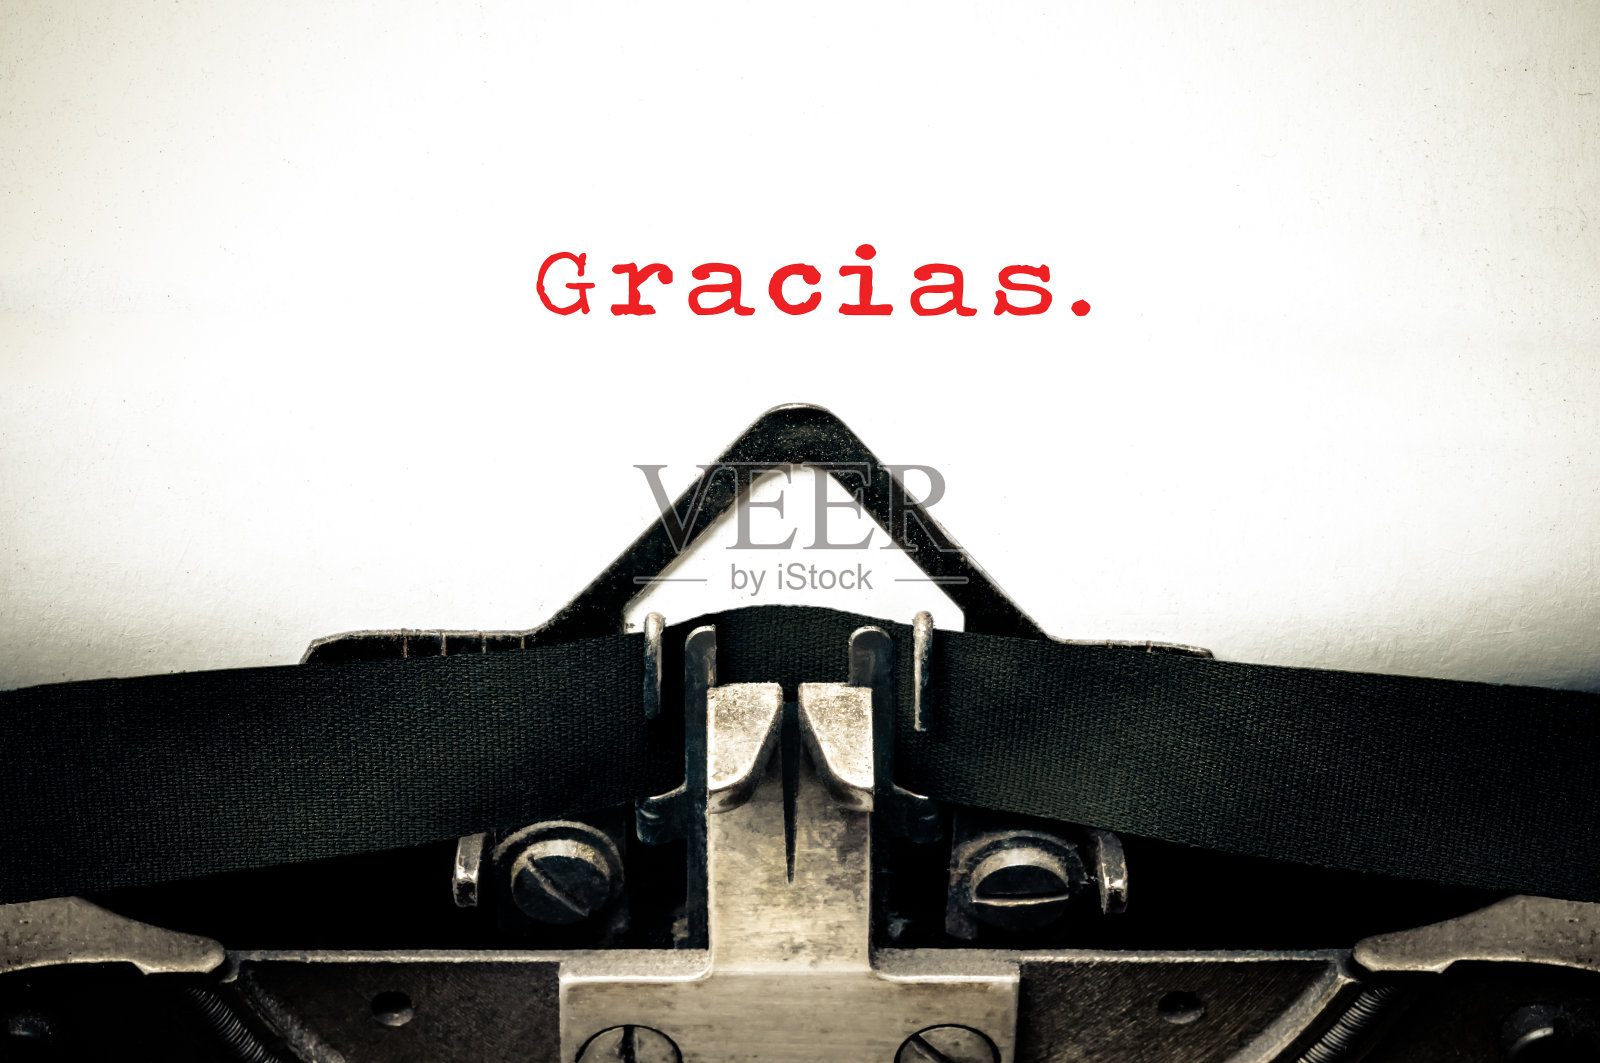 用西班牙语写“gracias”的打字机照片摄影图片